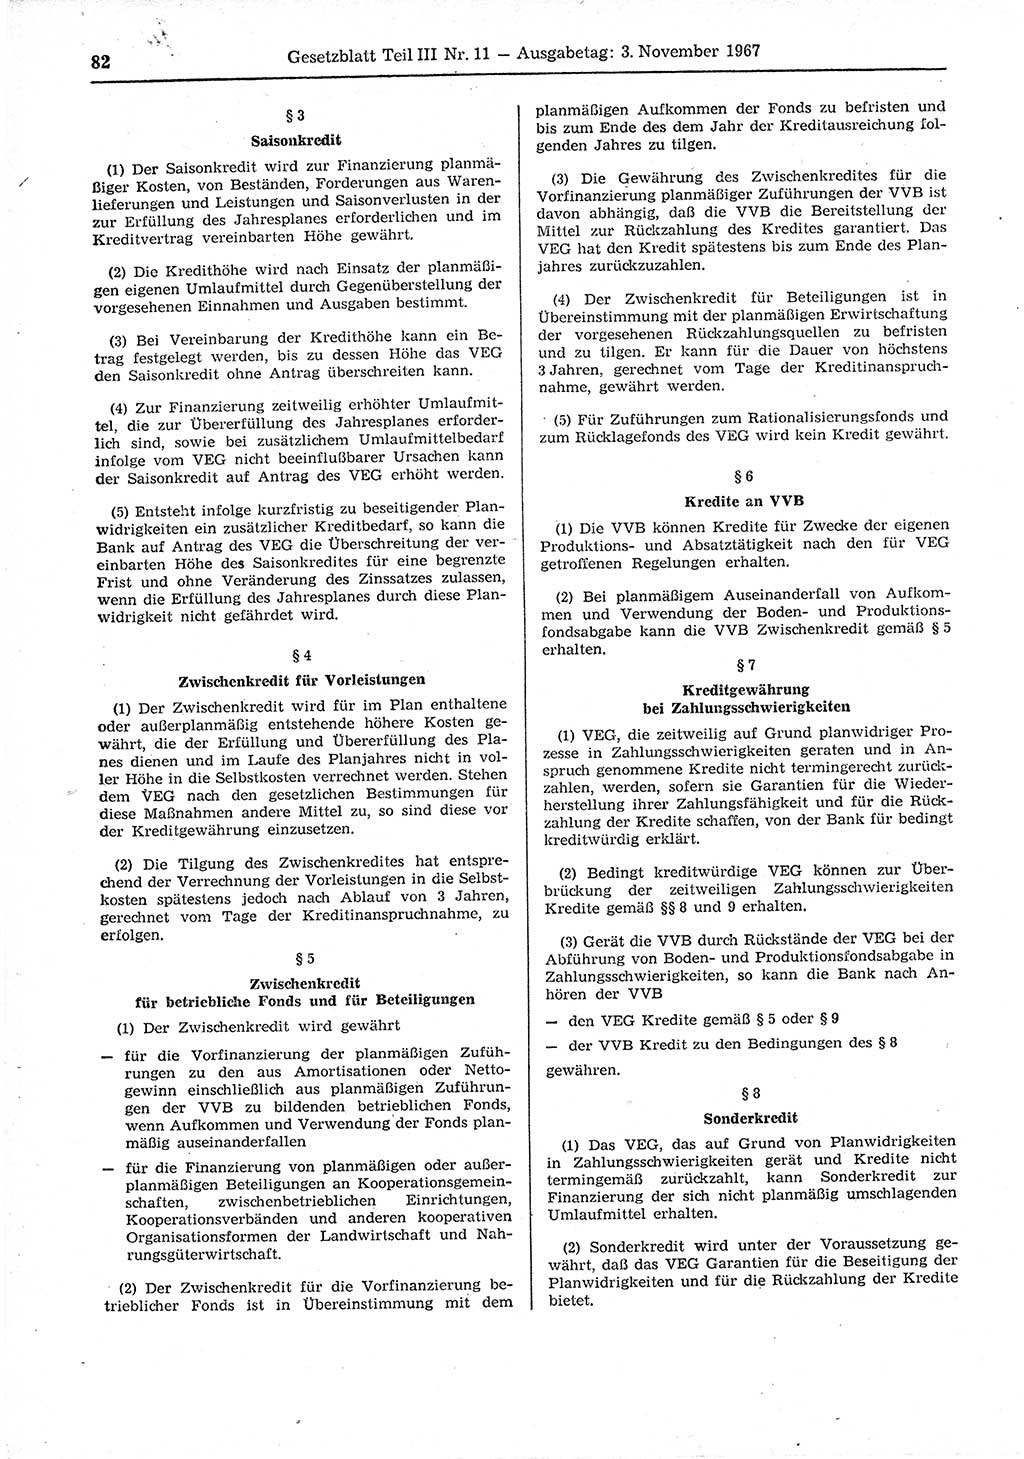 Gesetzblatt (GBl.) der Deutschen Demokratischen Republik (DDR) Teil ⅠⅠⅠ 1967, Seite 82 (GBl. DDR ⅠⅠⅠ 1967, S. 82)